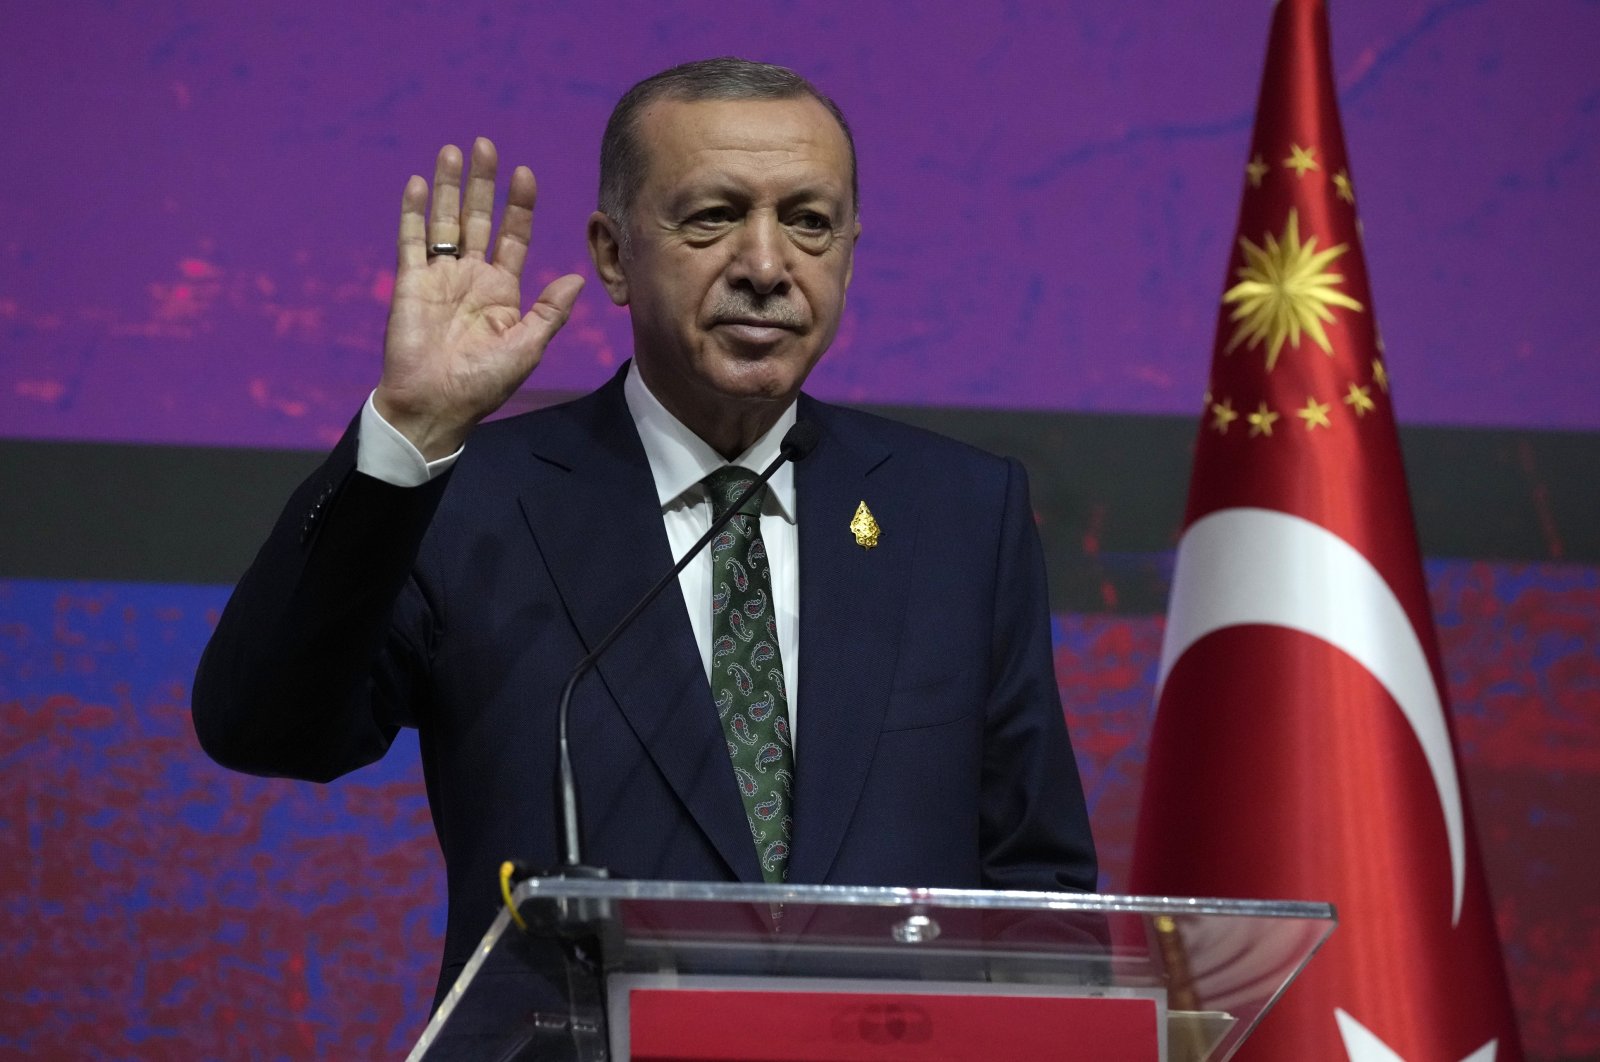 Kebangkitan Türkiye dan panggilan takdirnya